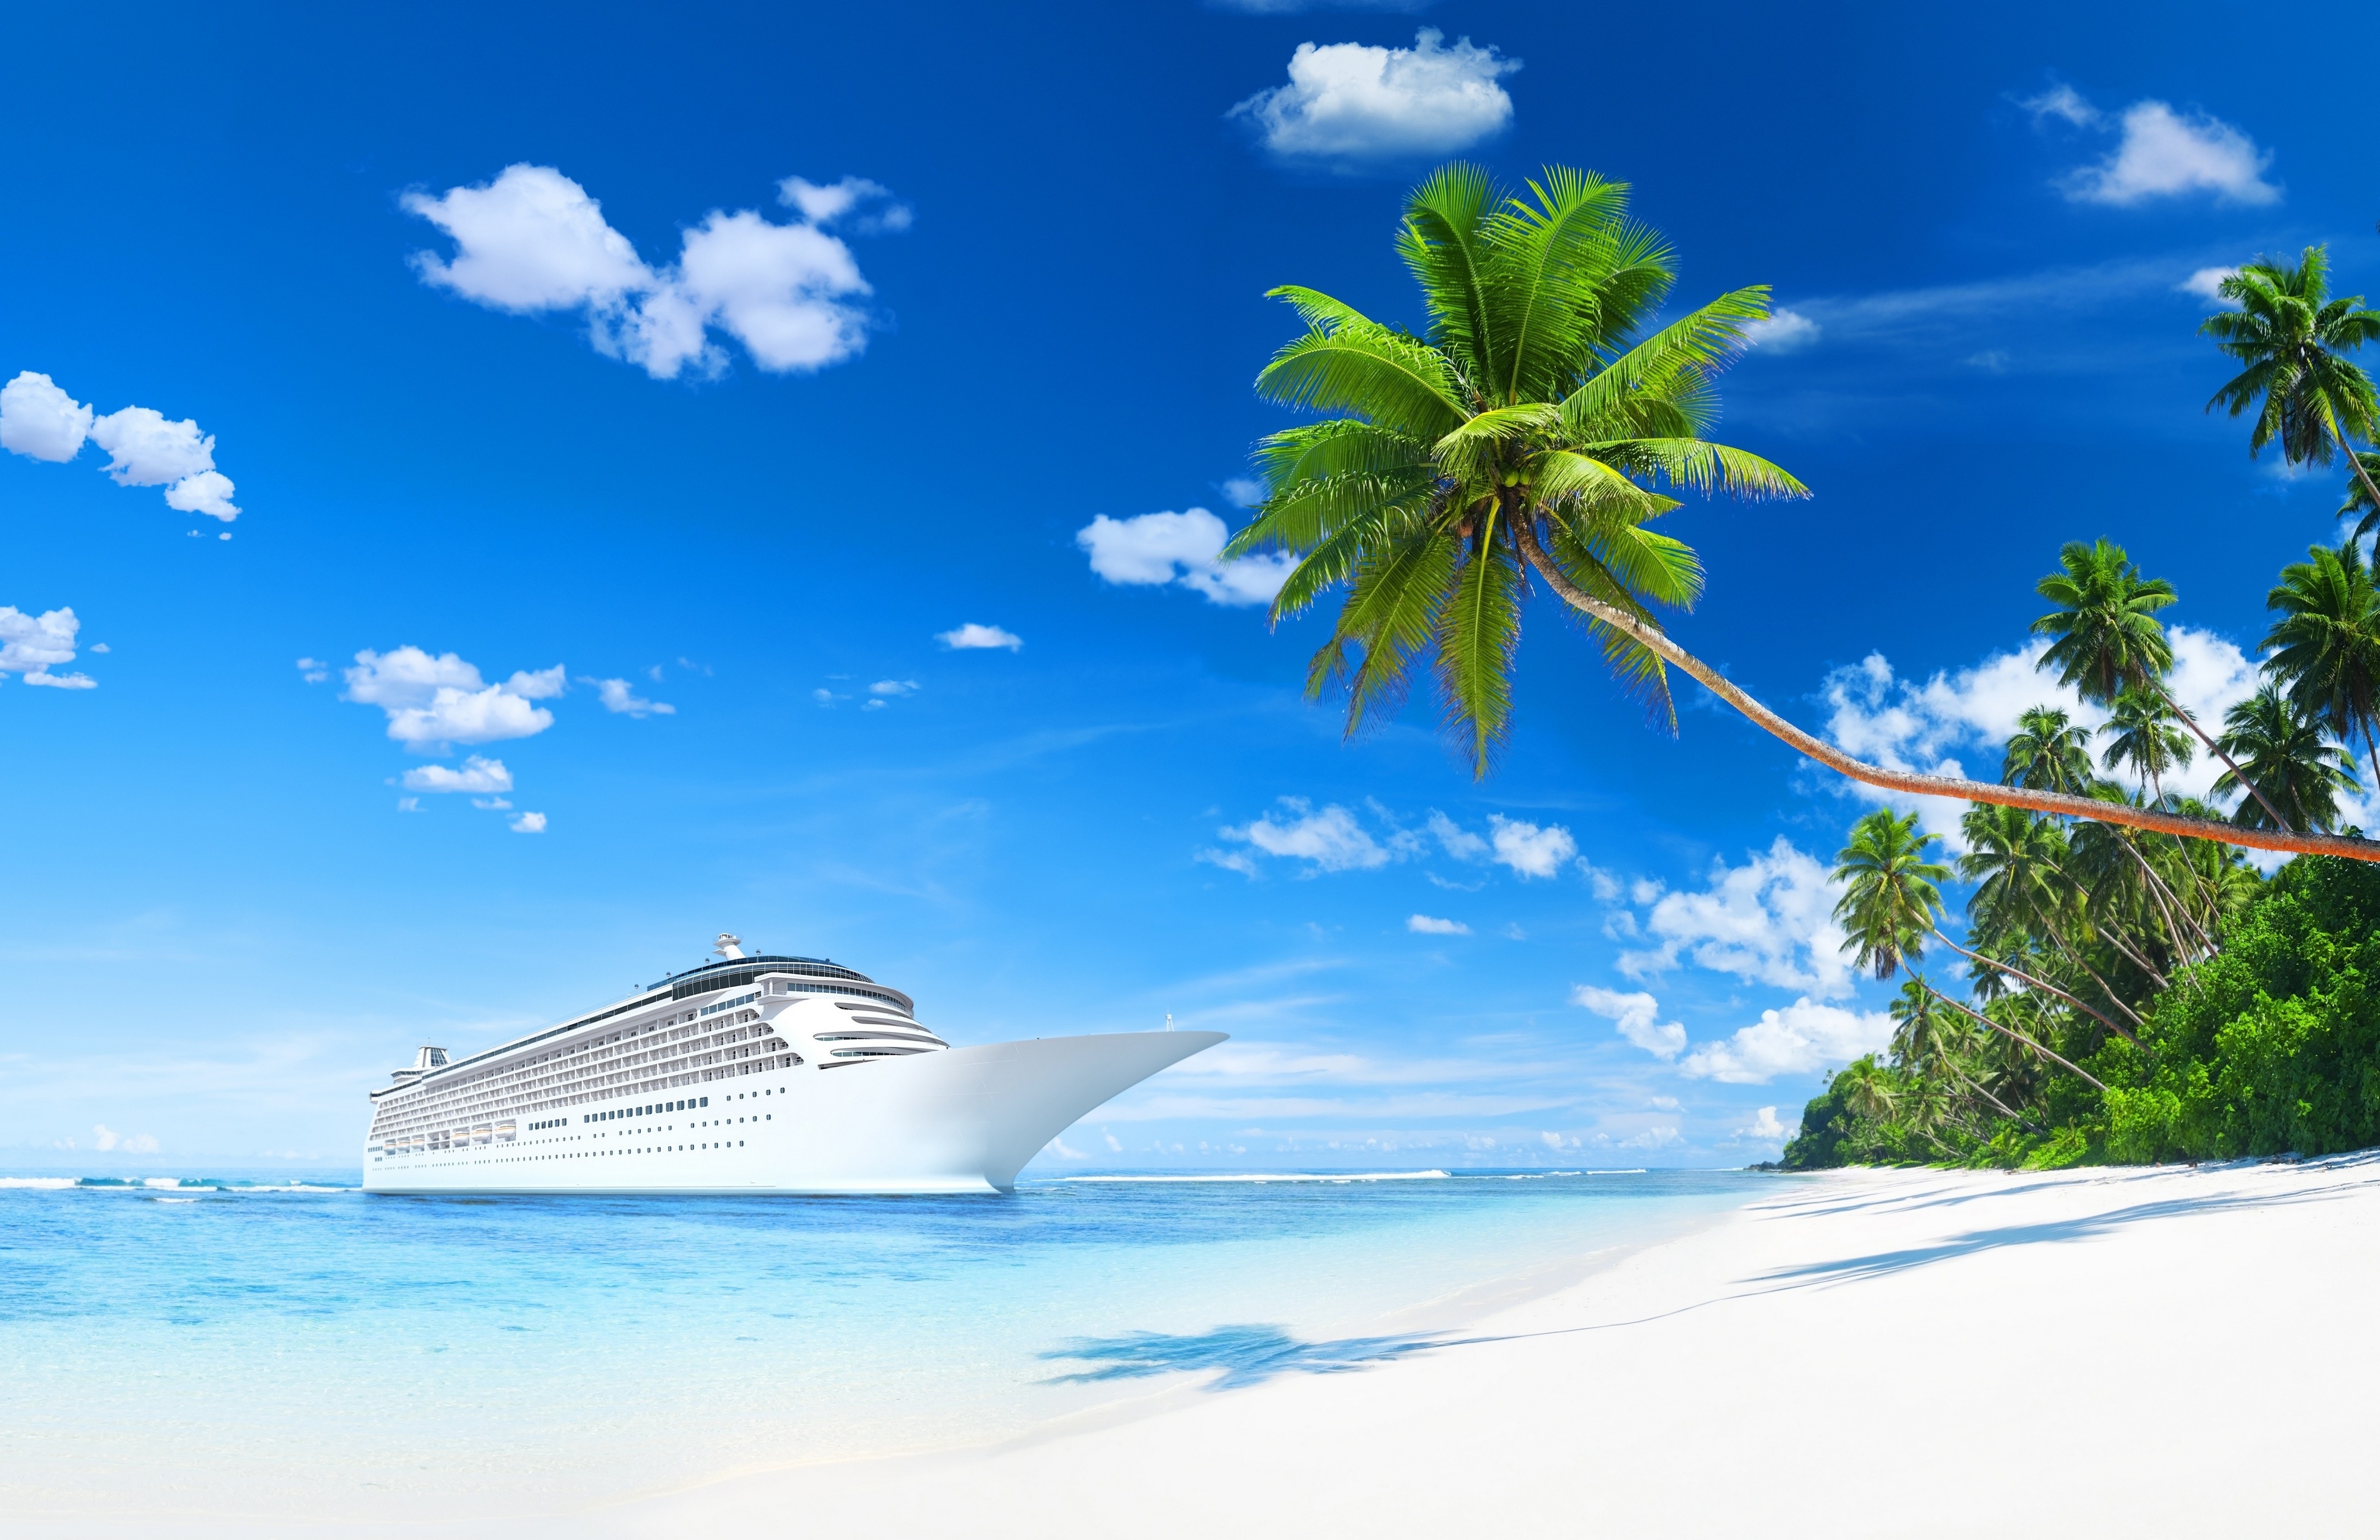 ð¥ Free download Cruise Ship HD Wallpapers Background Images [4000x2589